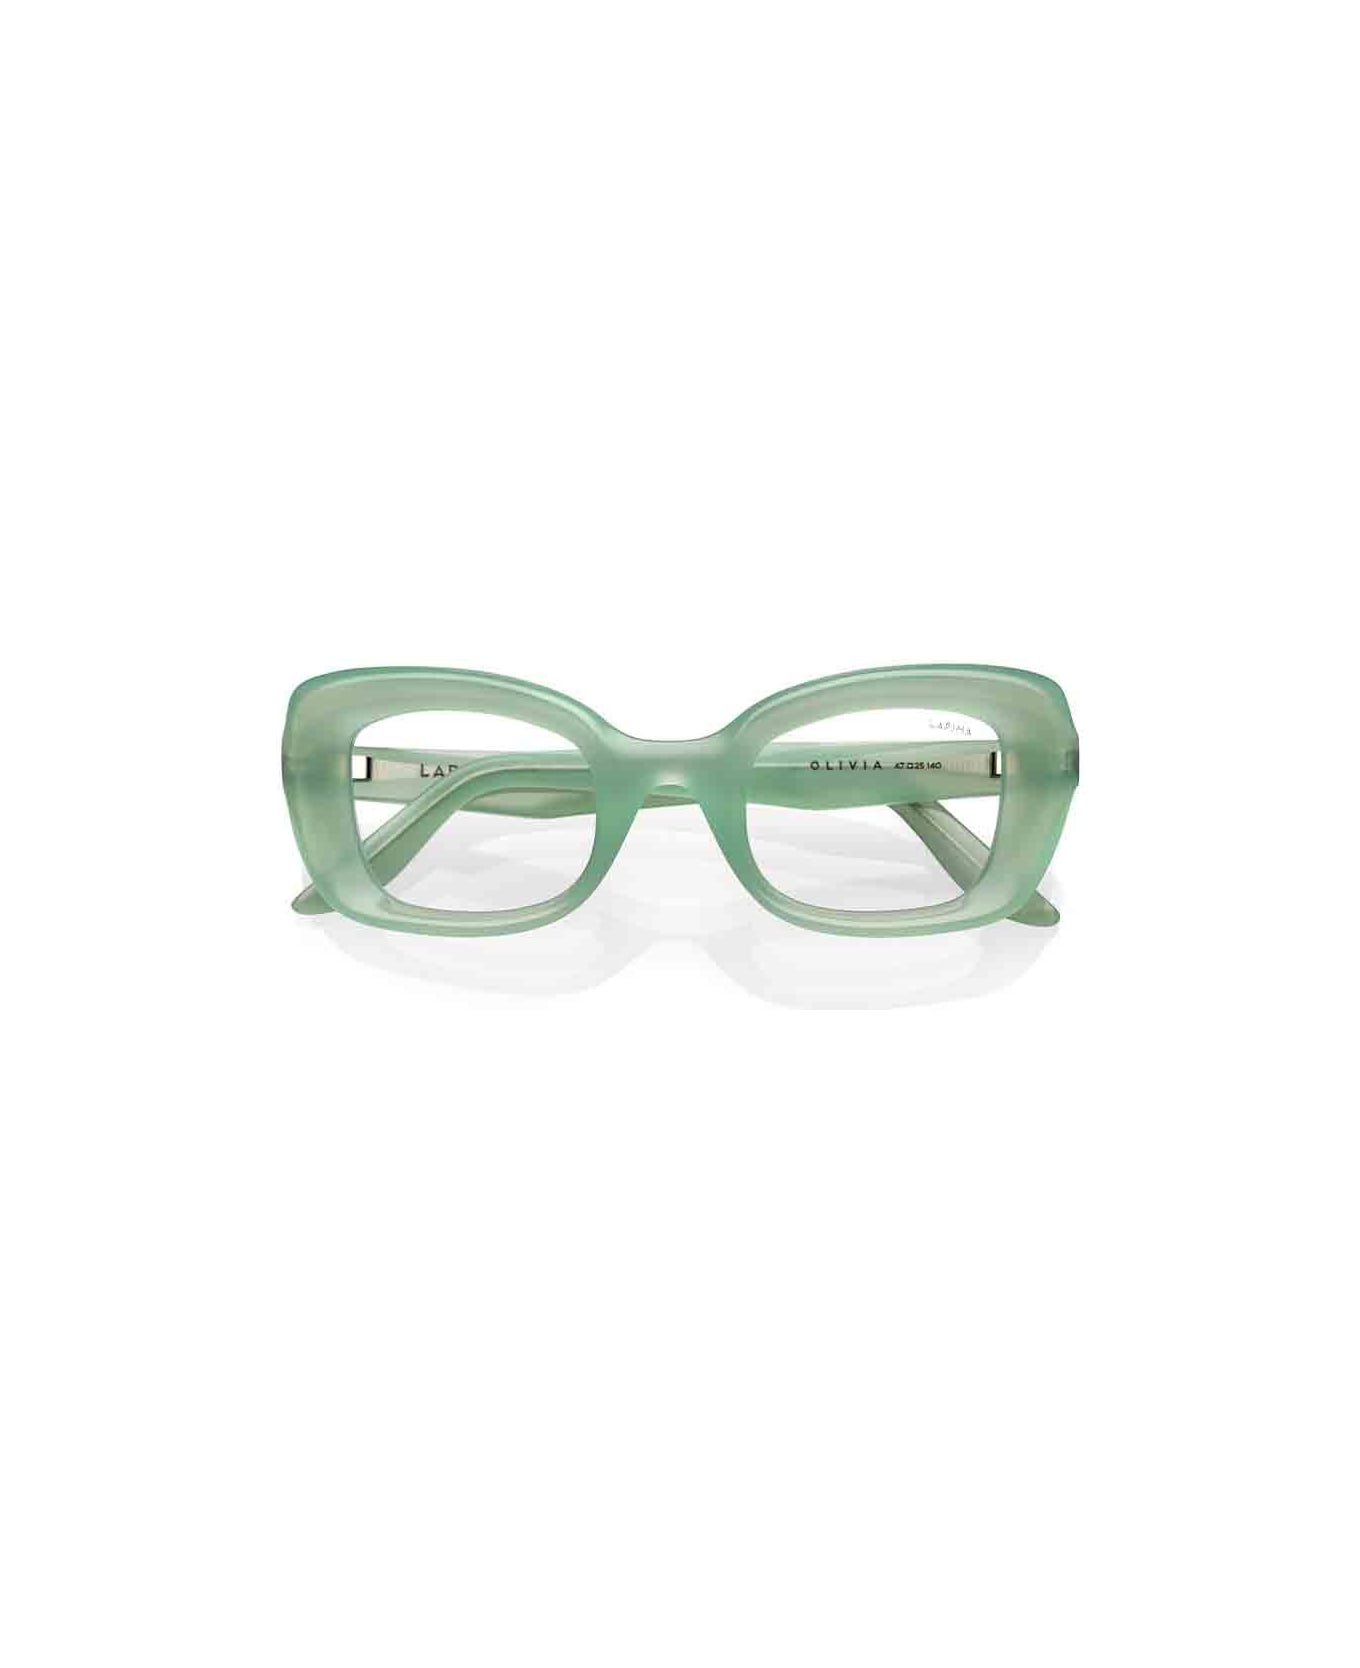 Lapima Eyewear - Verde アイウェア